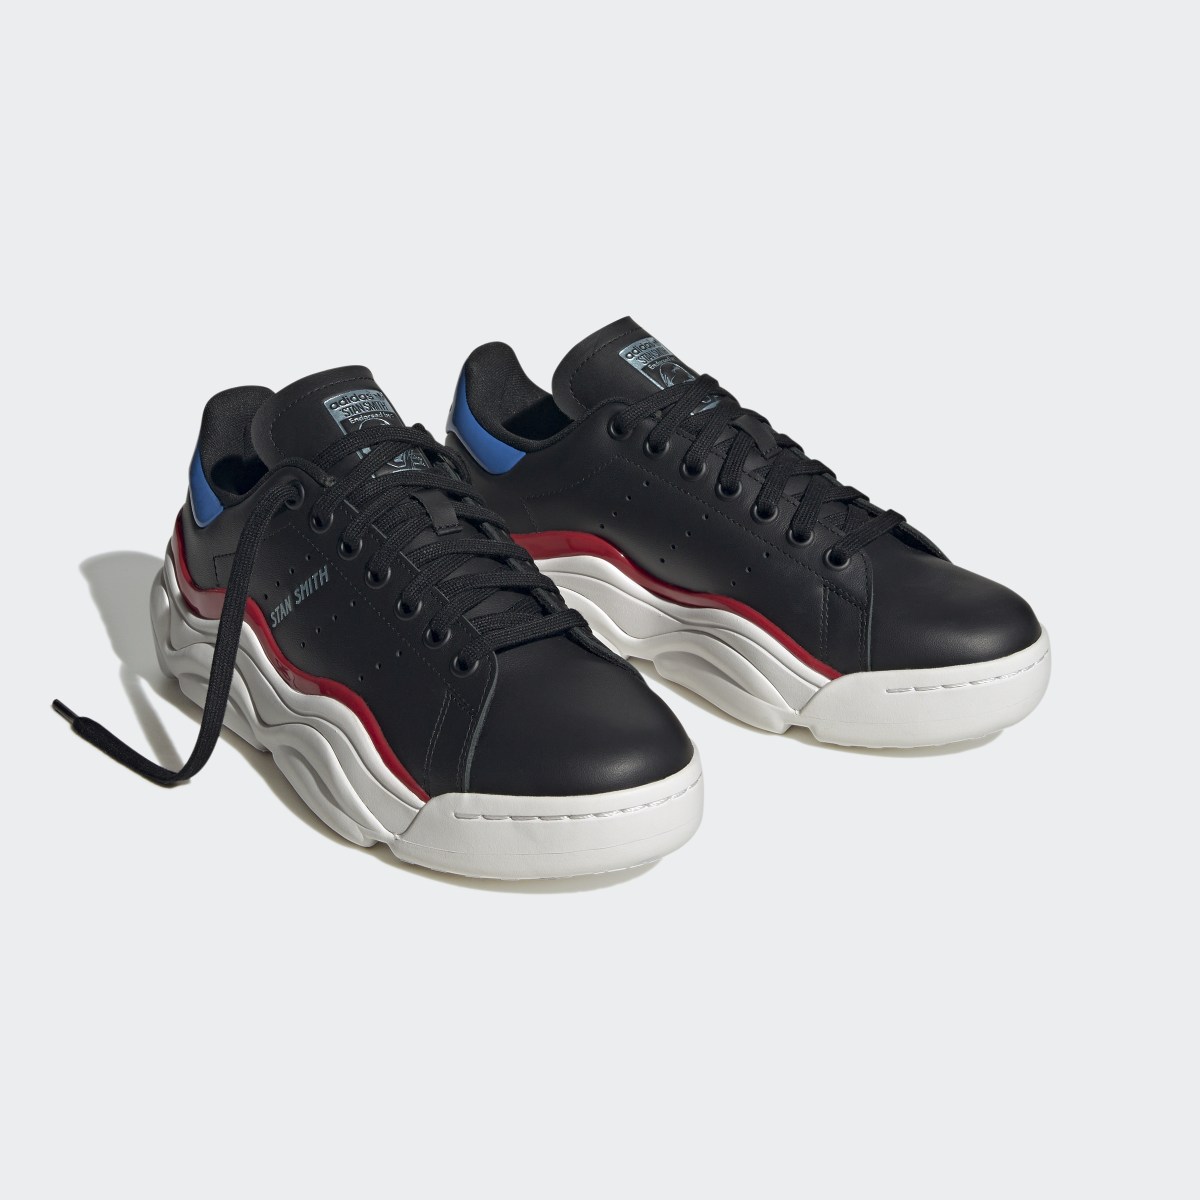 Adidas Stan Smith Millencon Shoes. 5